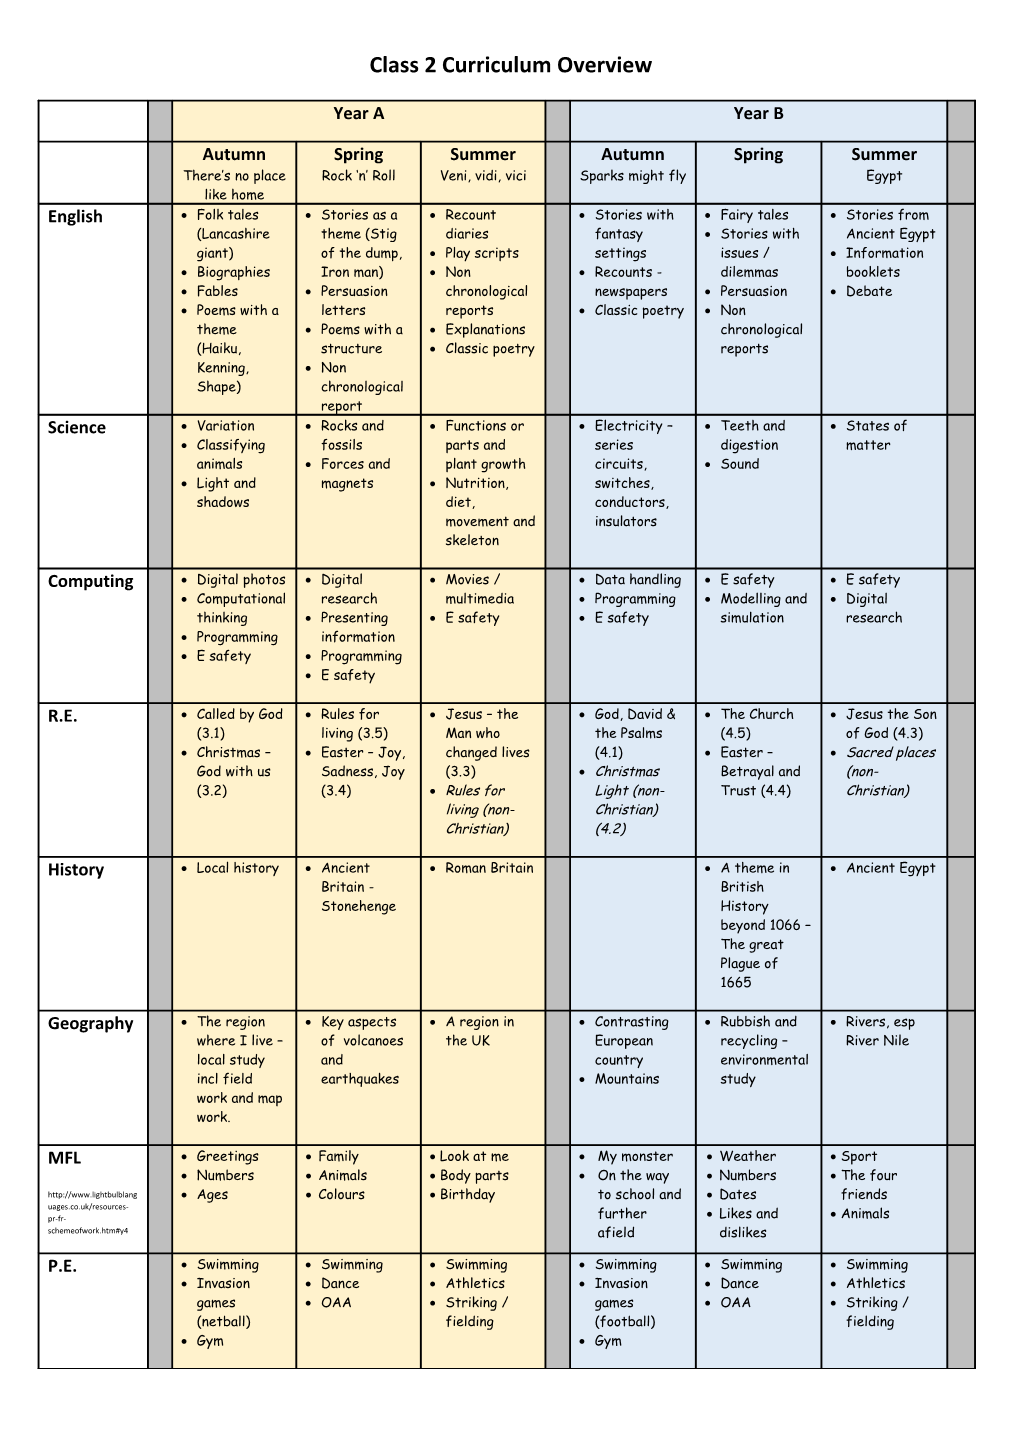 Class 3 Curriculum Overview